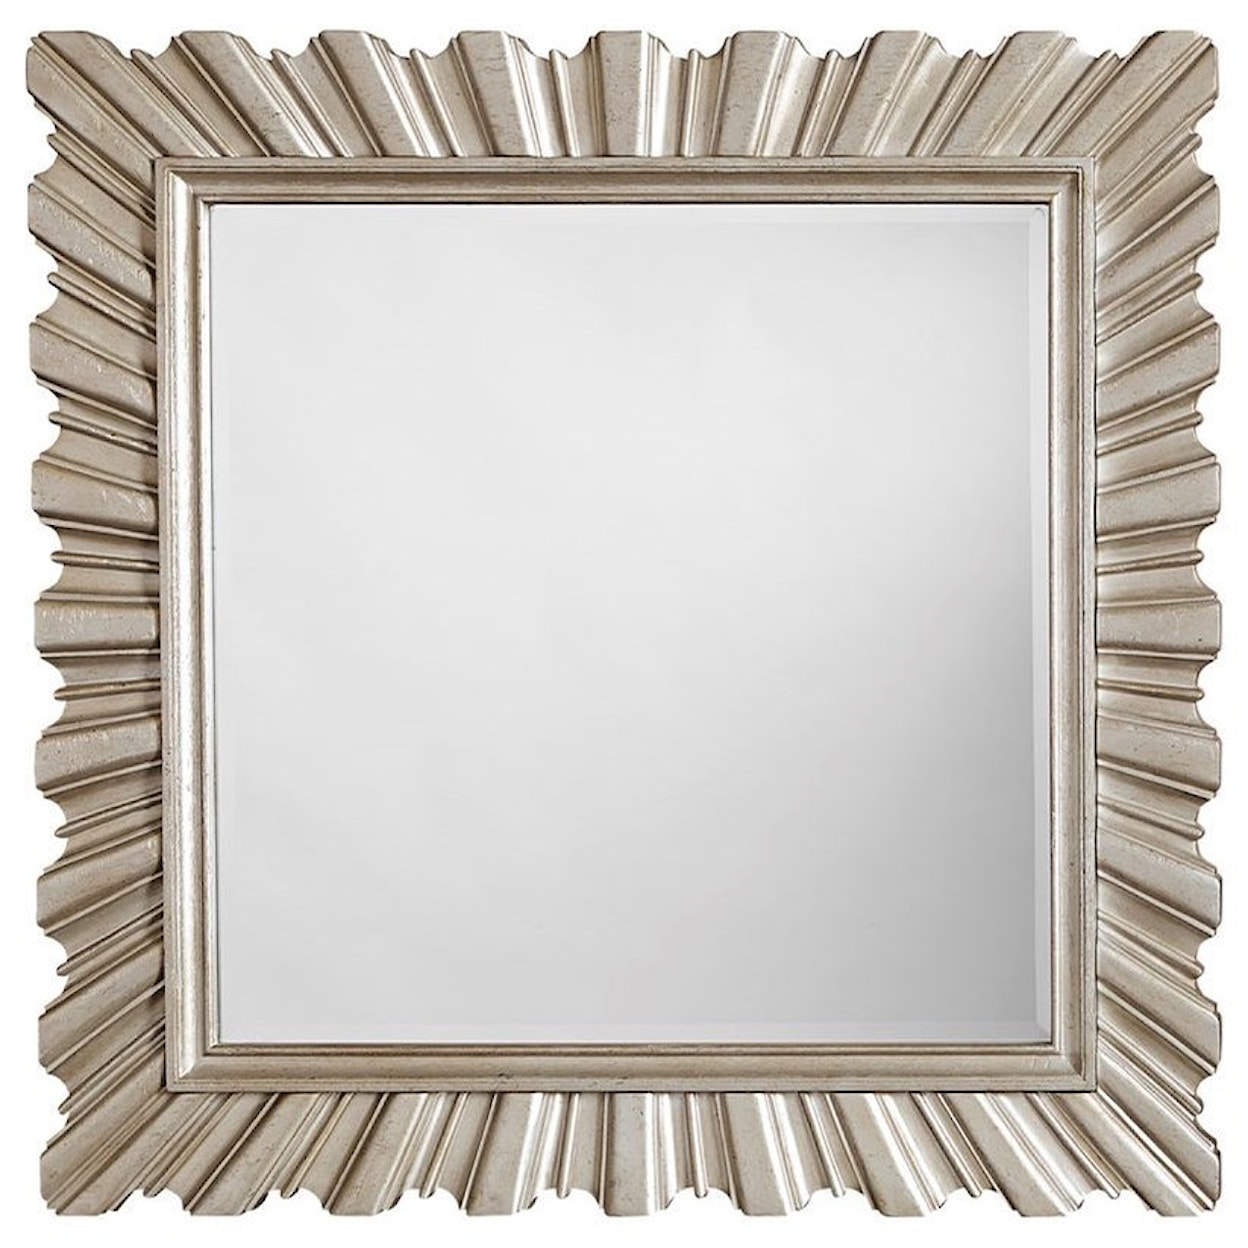 A.R.T. Furniture Inc Starlite Dresser & Accent Mirror